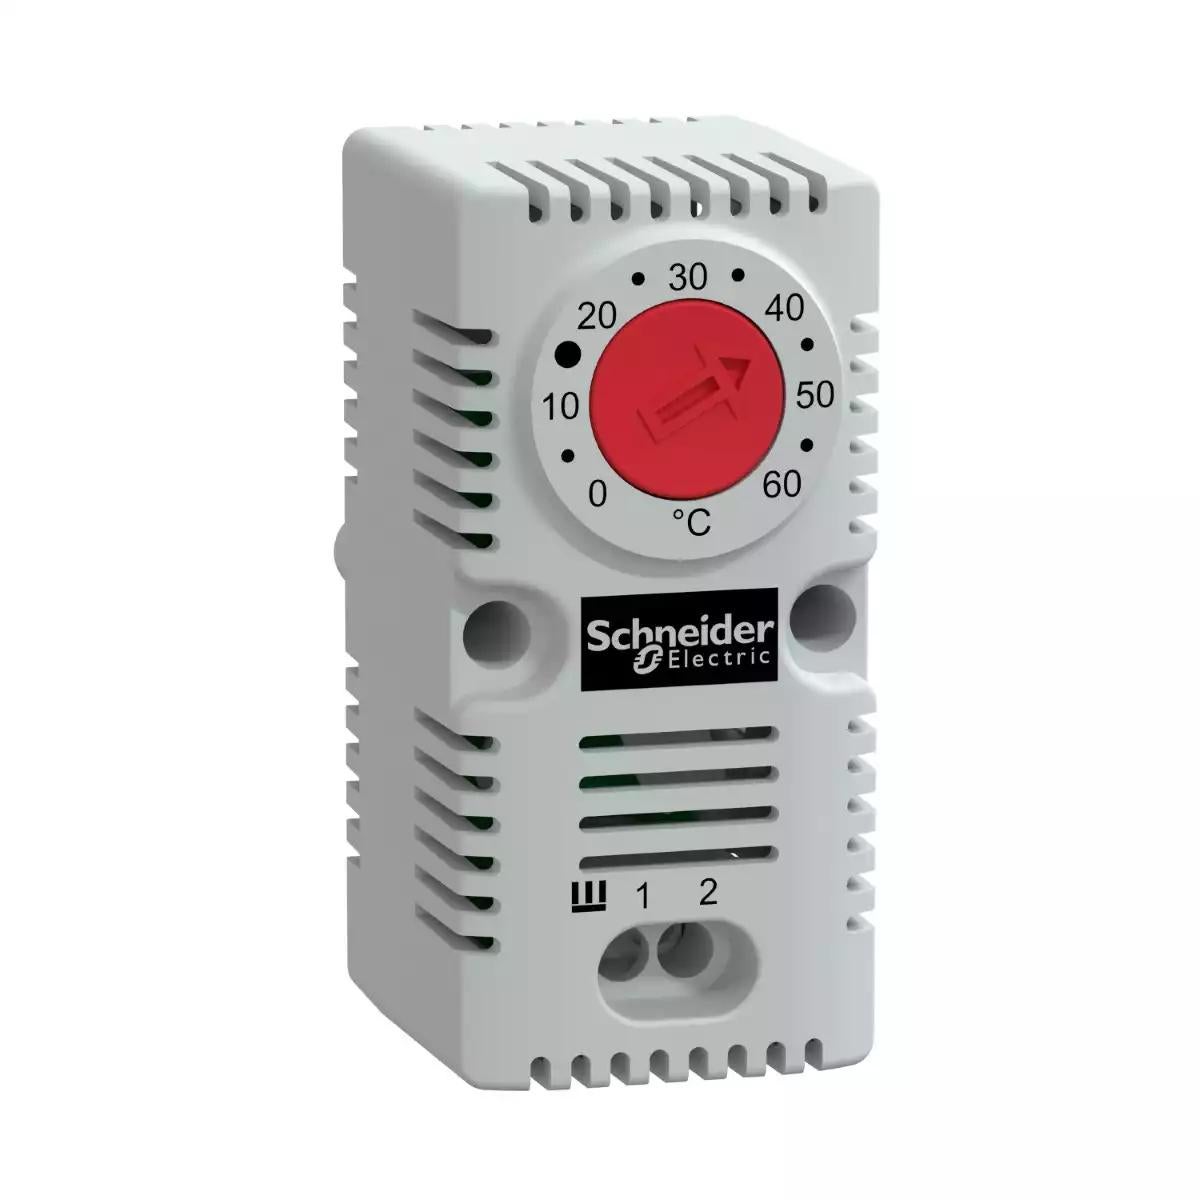 Schneider Electric Climasys CC- simple thermostat 250V - range of temperature 0ÃƒÂ¢Ã¢â€šÂ¬Ã‚Â¦60Ãƒâ€šÃ‚Â°C - NC - Ãƒâ€šÃ‚Â°C